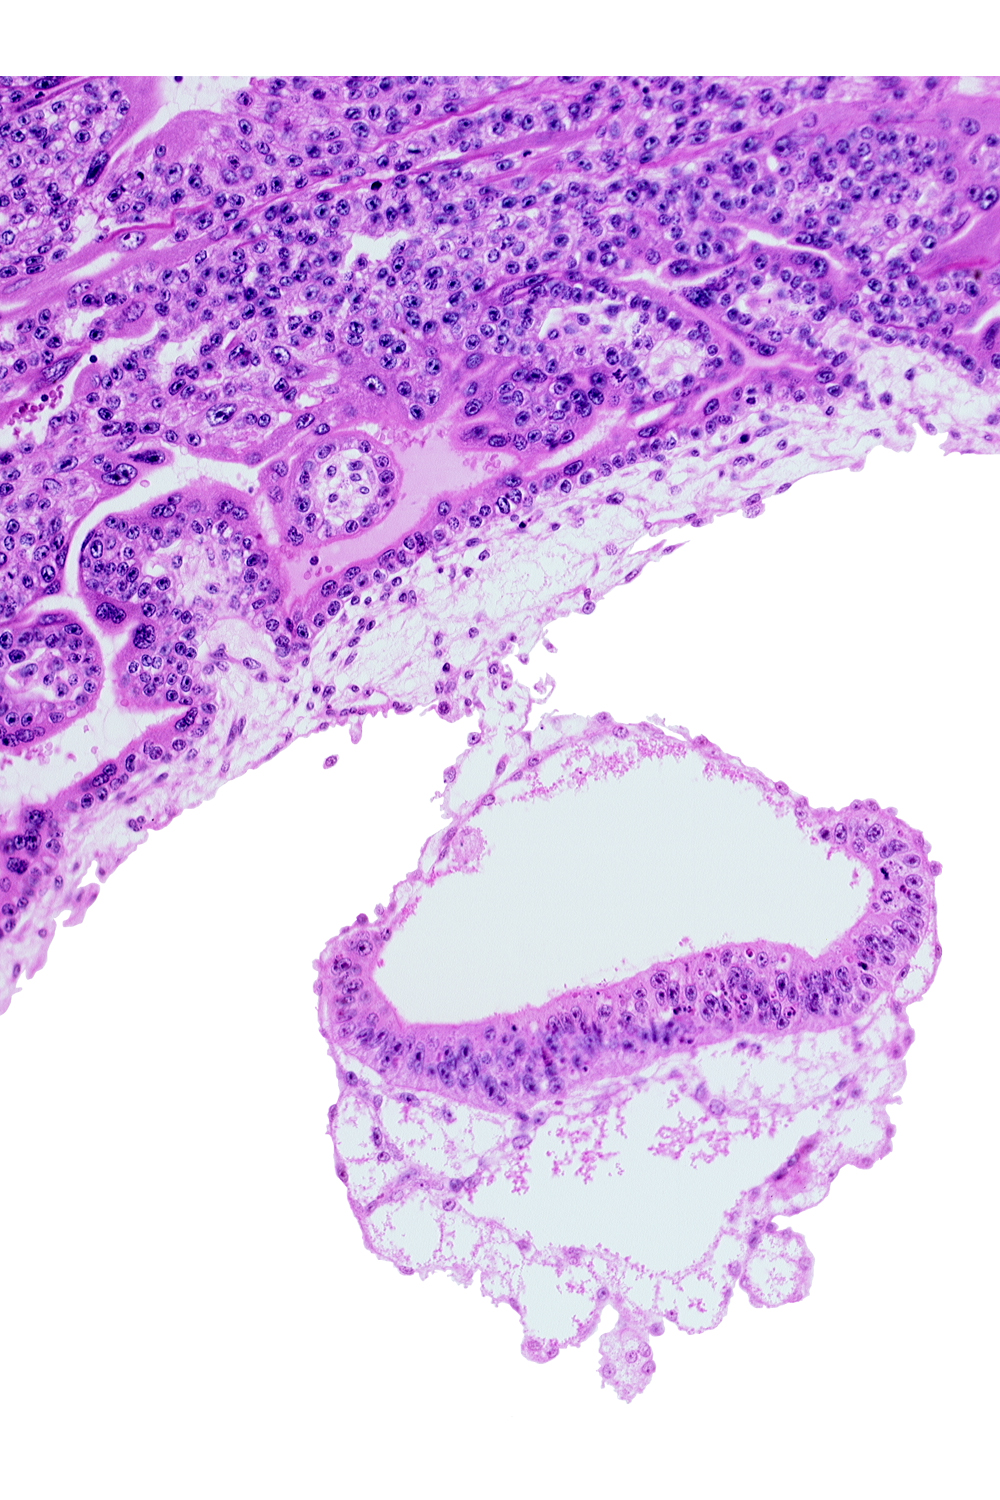 amnion, amniotic cavity, connecting stalk, epiblast, extra-embryonic endoderm, extra-embryonic mesoblast, umbilical vesicle cavity